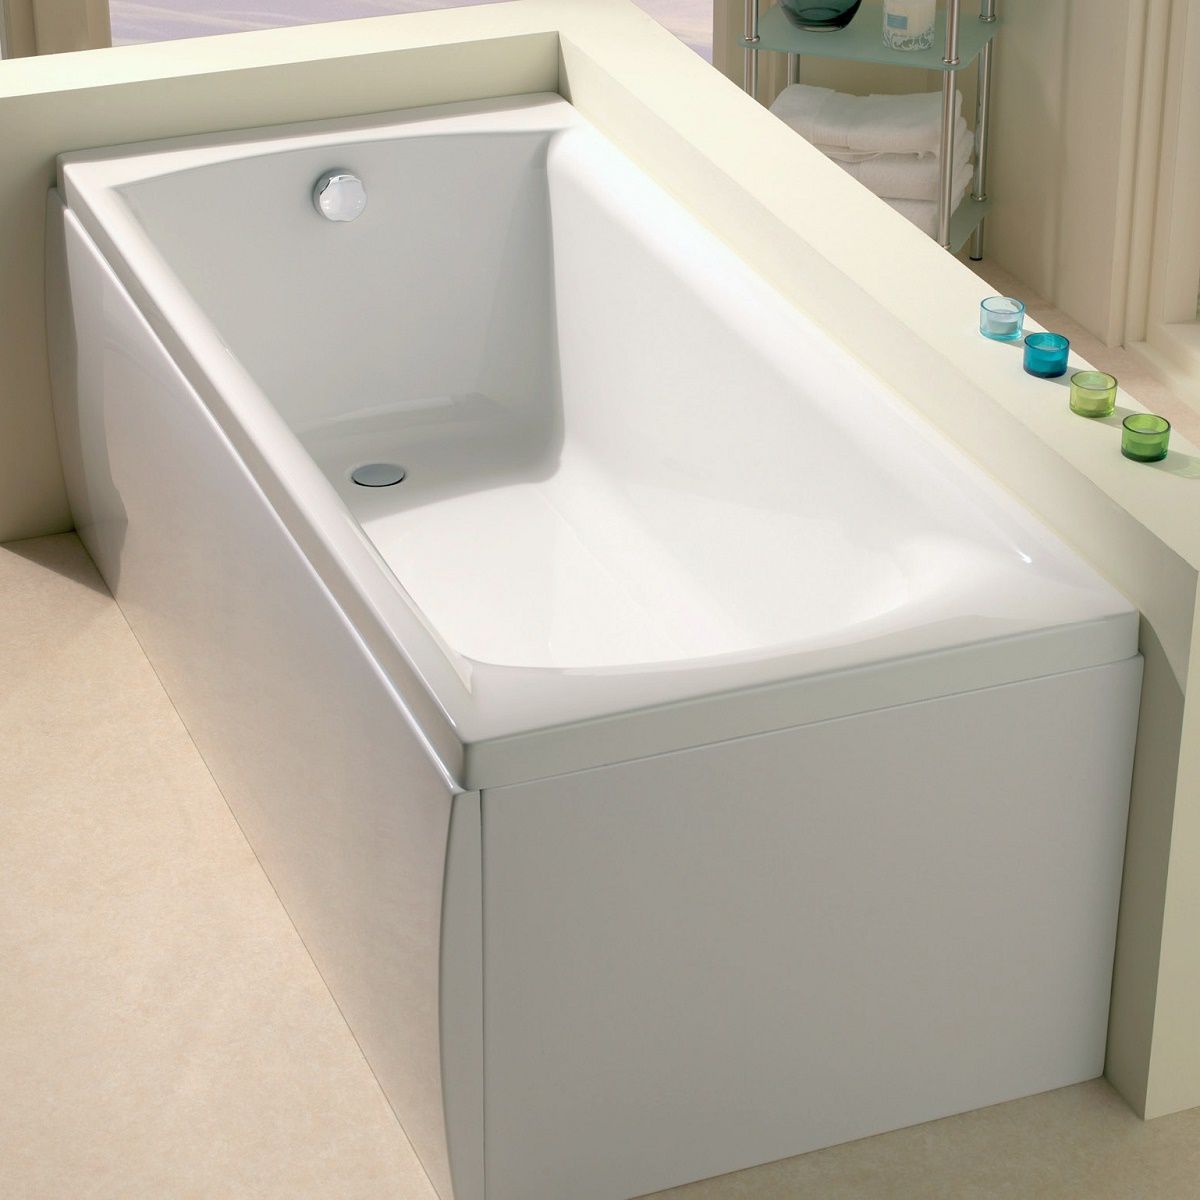 Ванна Duravit - Vero Single ended built in Bath - 1700 x 700mm - left hand. Ванная 1400х700. Bathtub Standard. Rectangle Acrylic Bath.